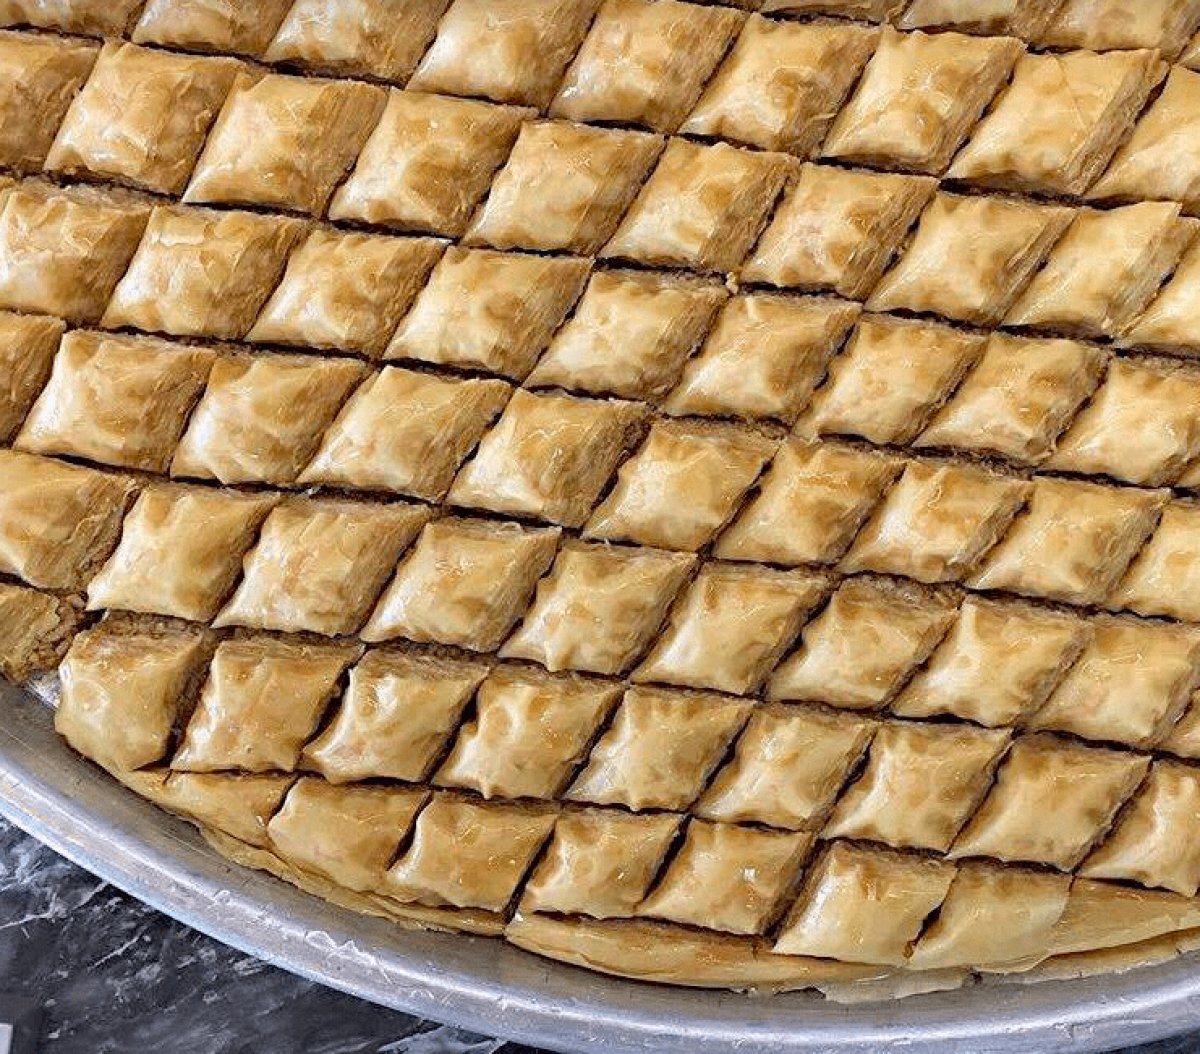 Yunanistan da manşet: Baklava, geleneksel Yunan tatlısıdır #3